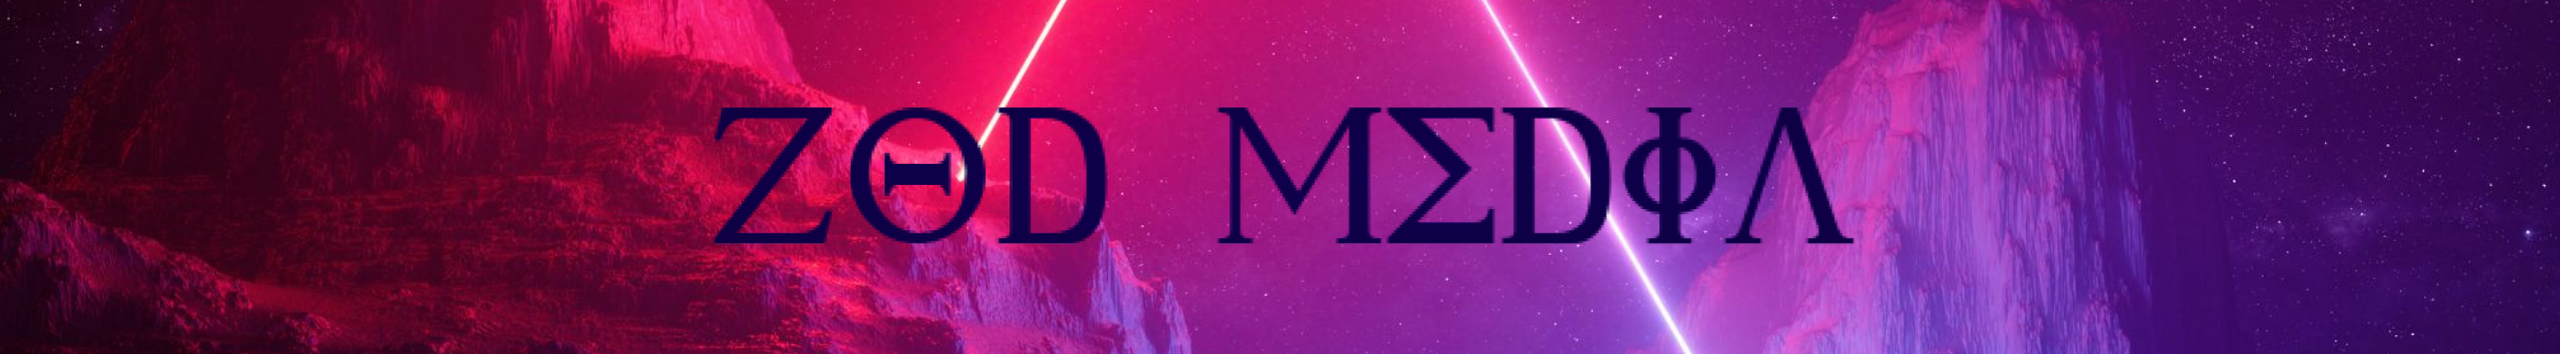 Zod Media's profile banner